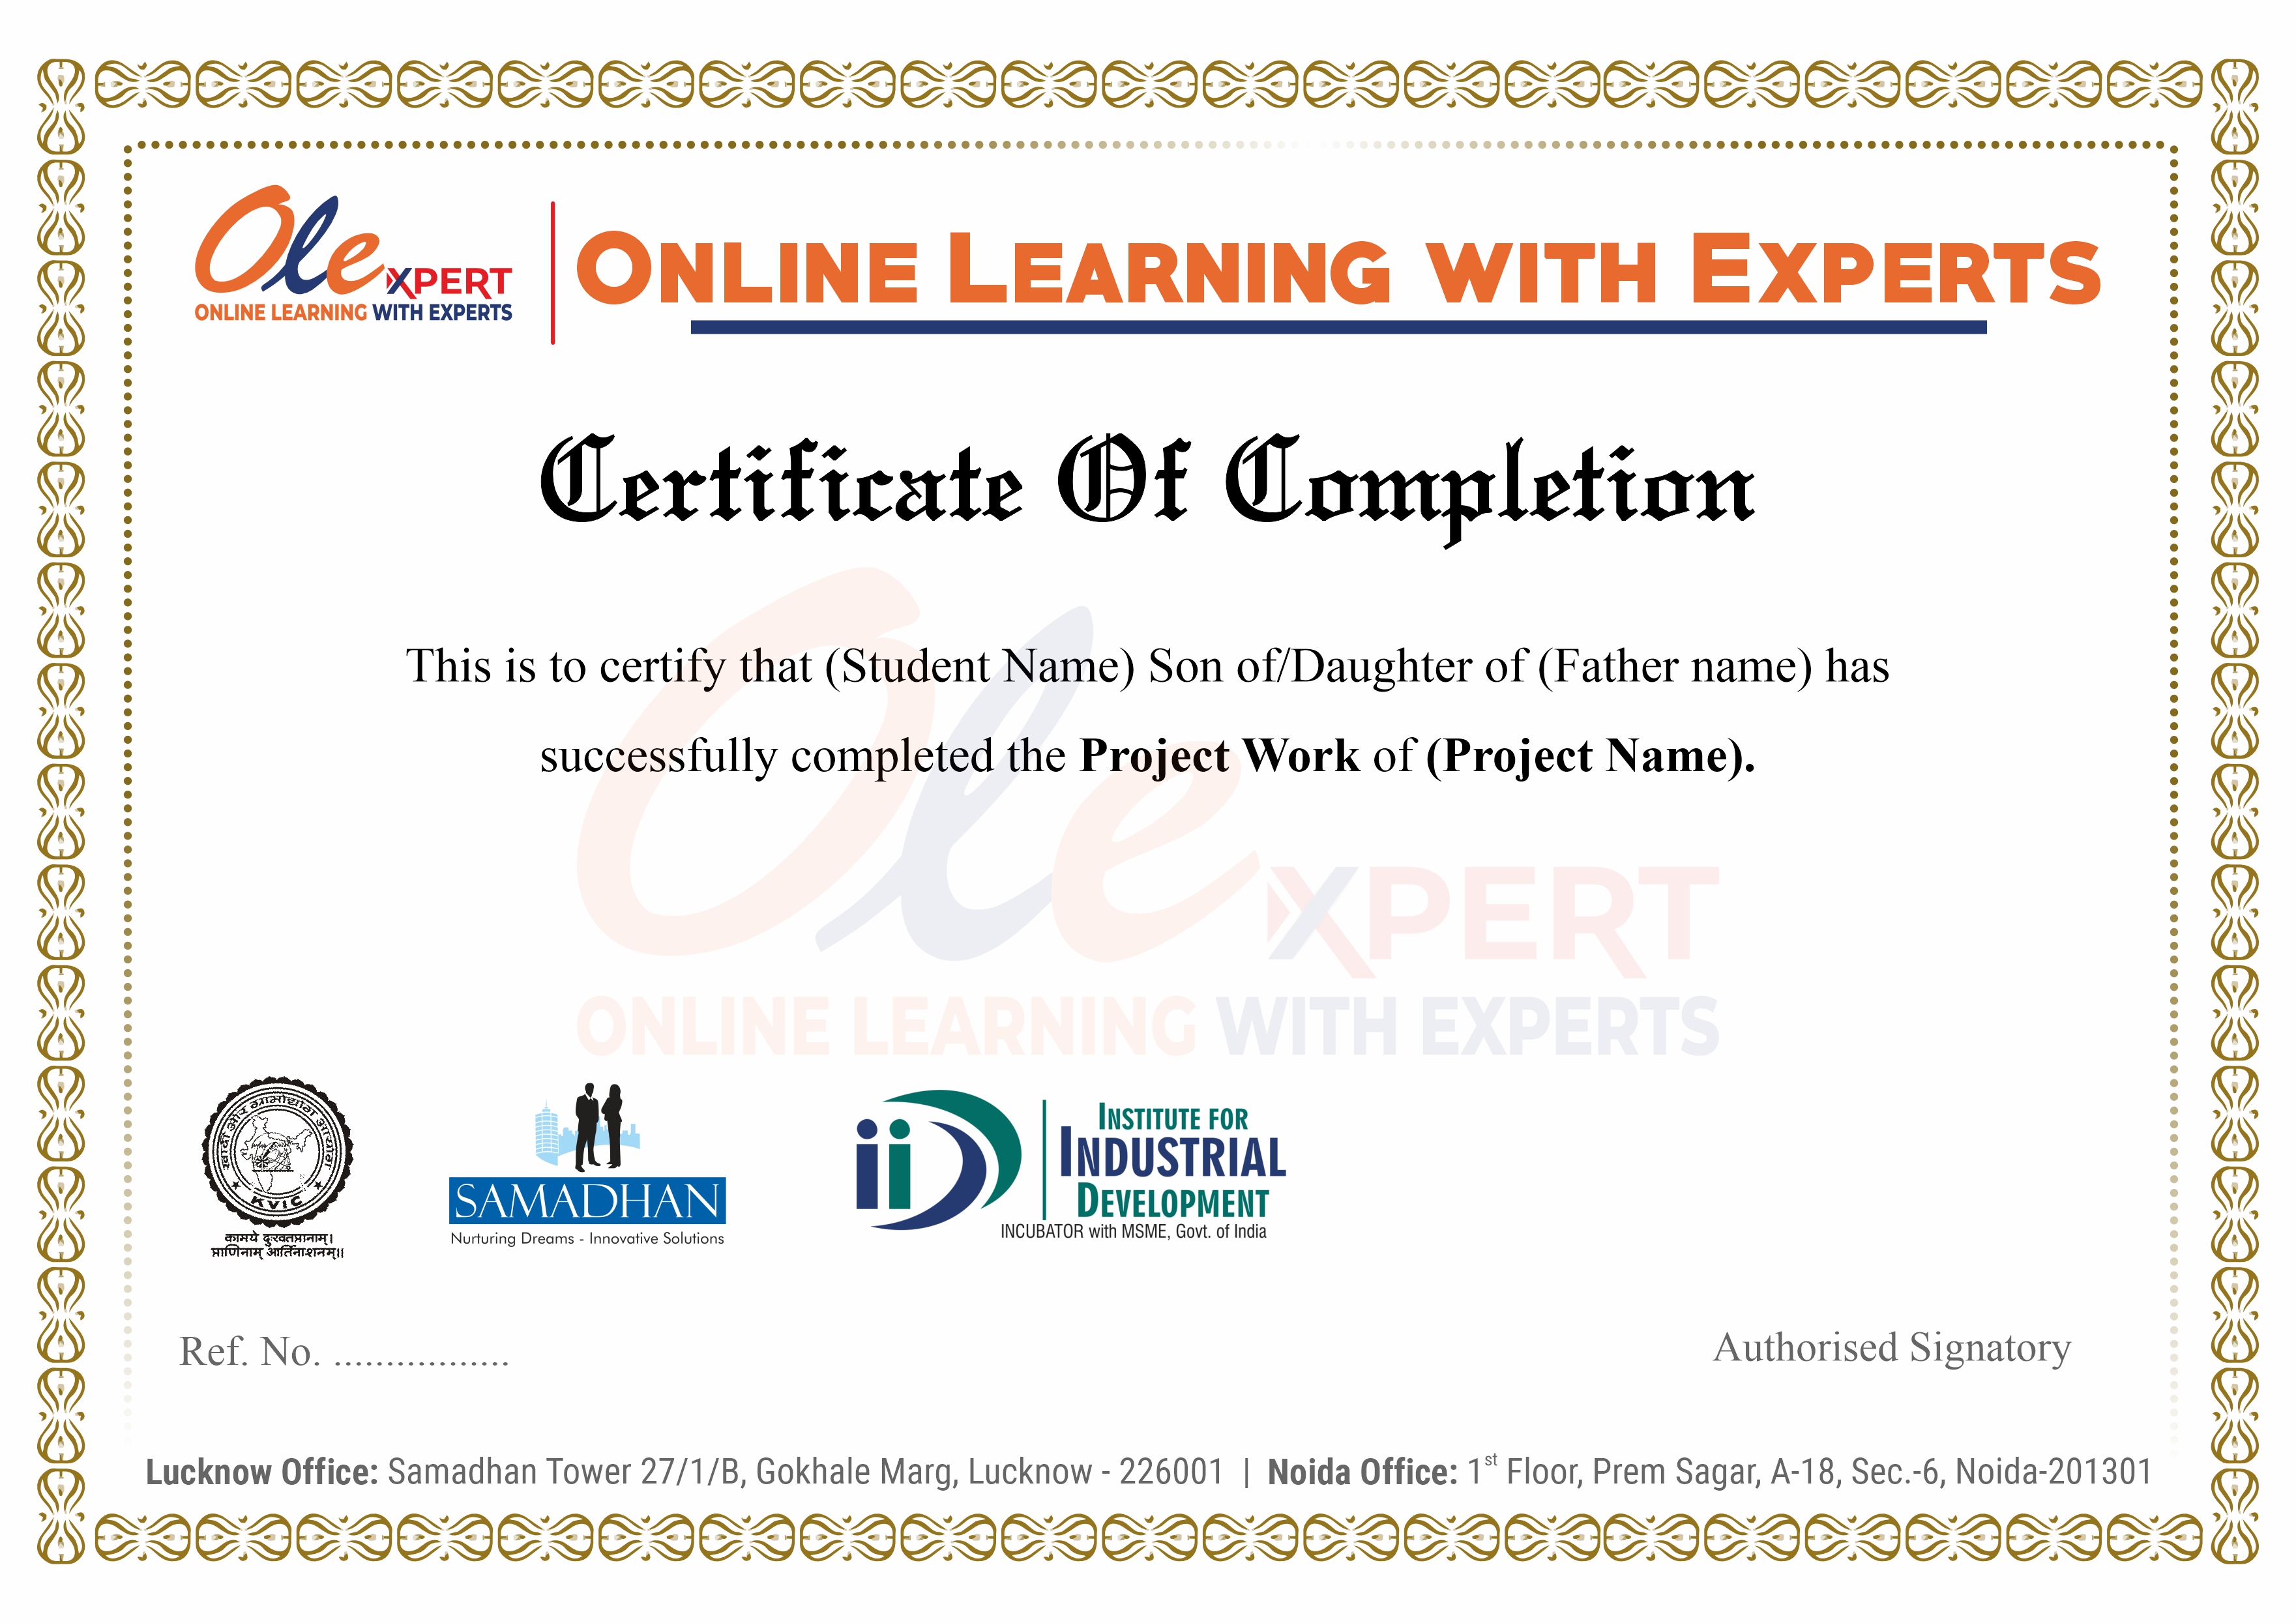 OLExpert Demo Certificate